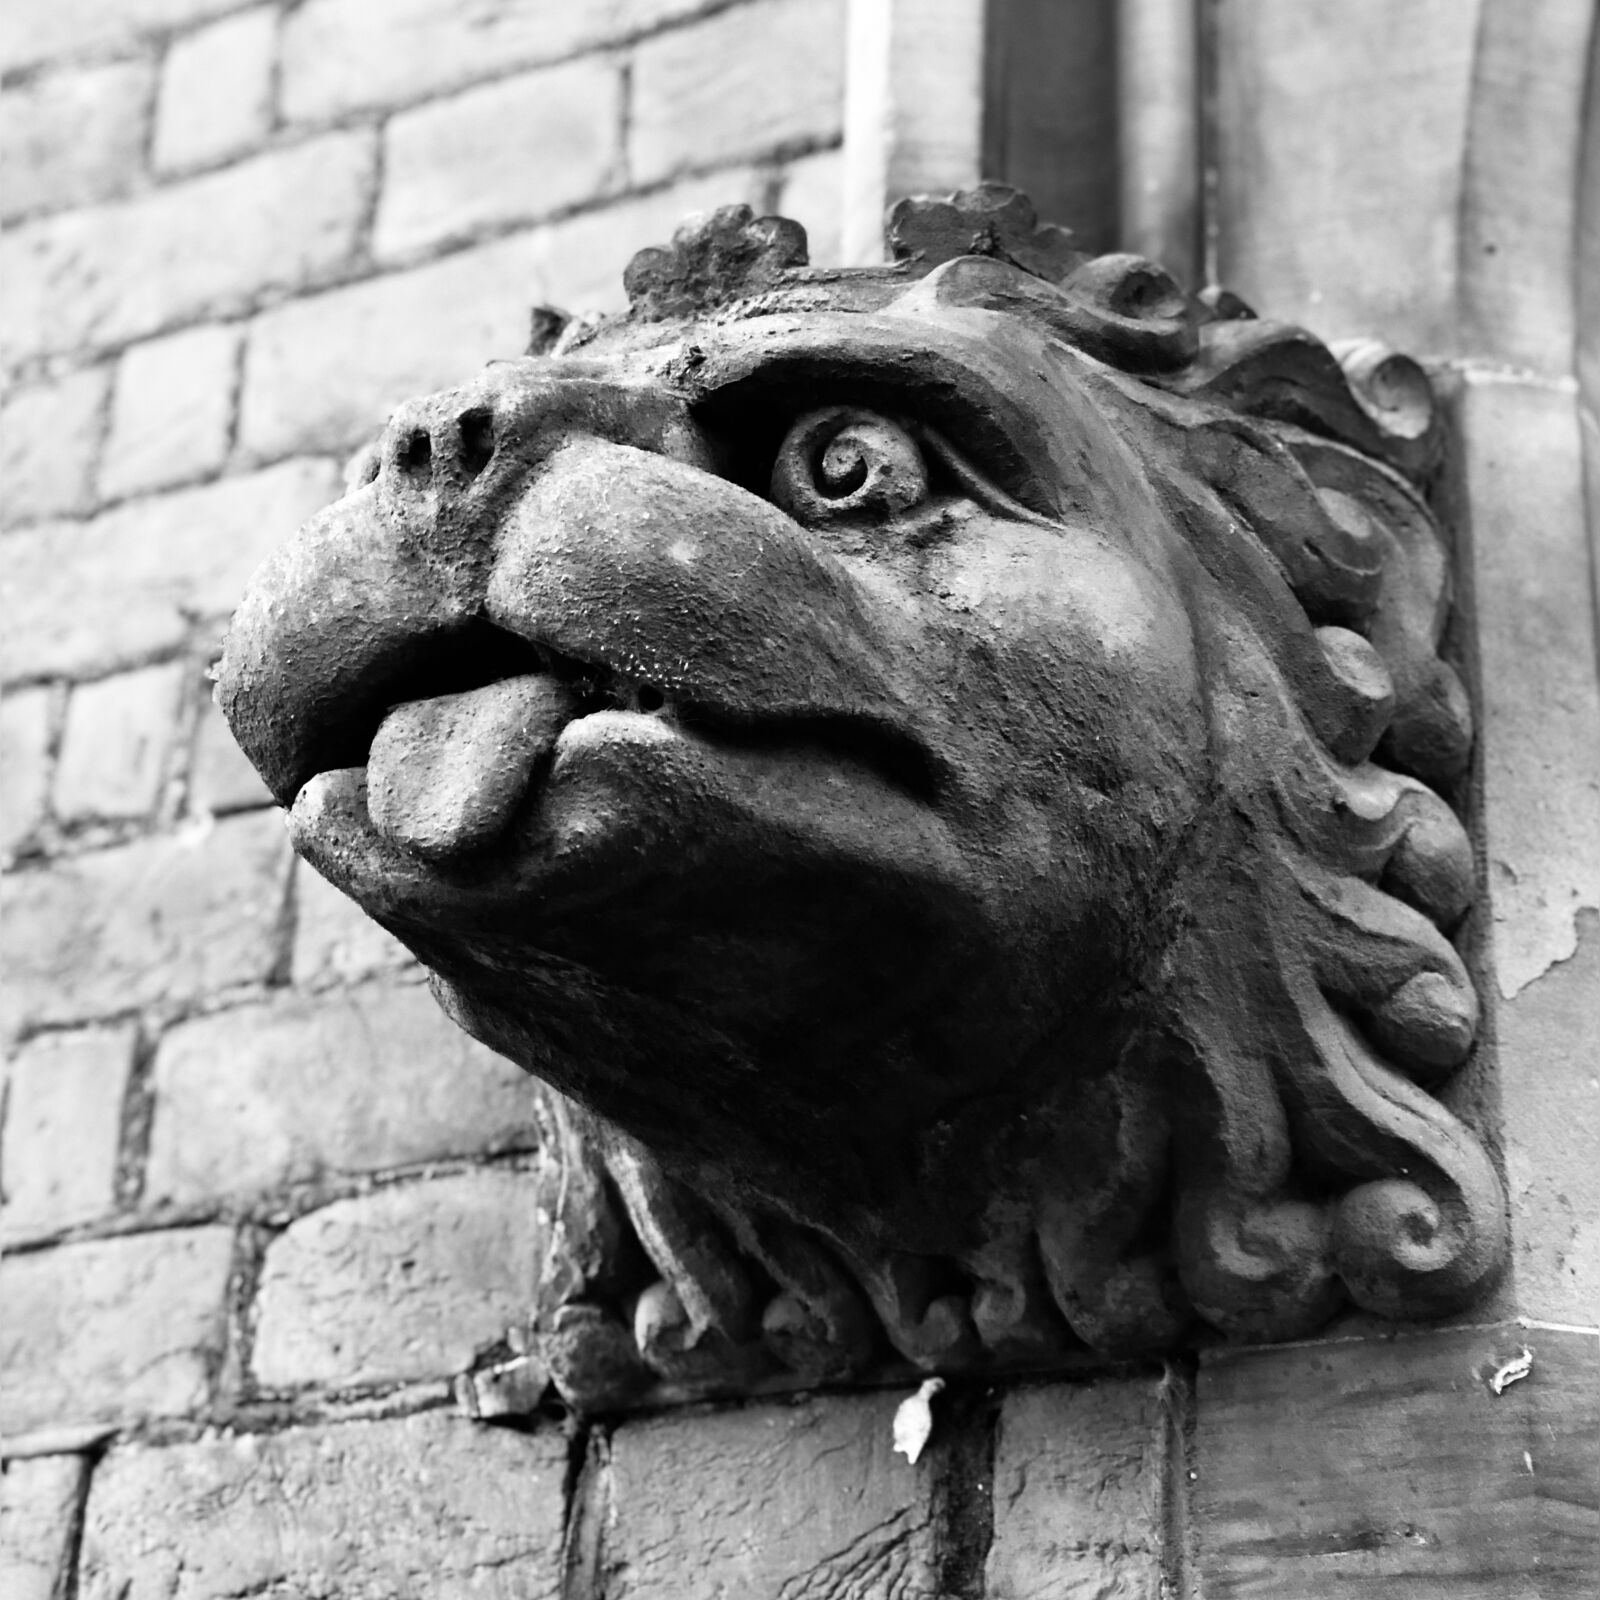 Apple iPhone 8 Plus sample photo. The gargoyle, lion, stone photography